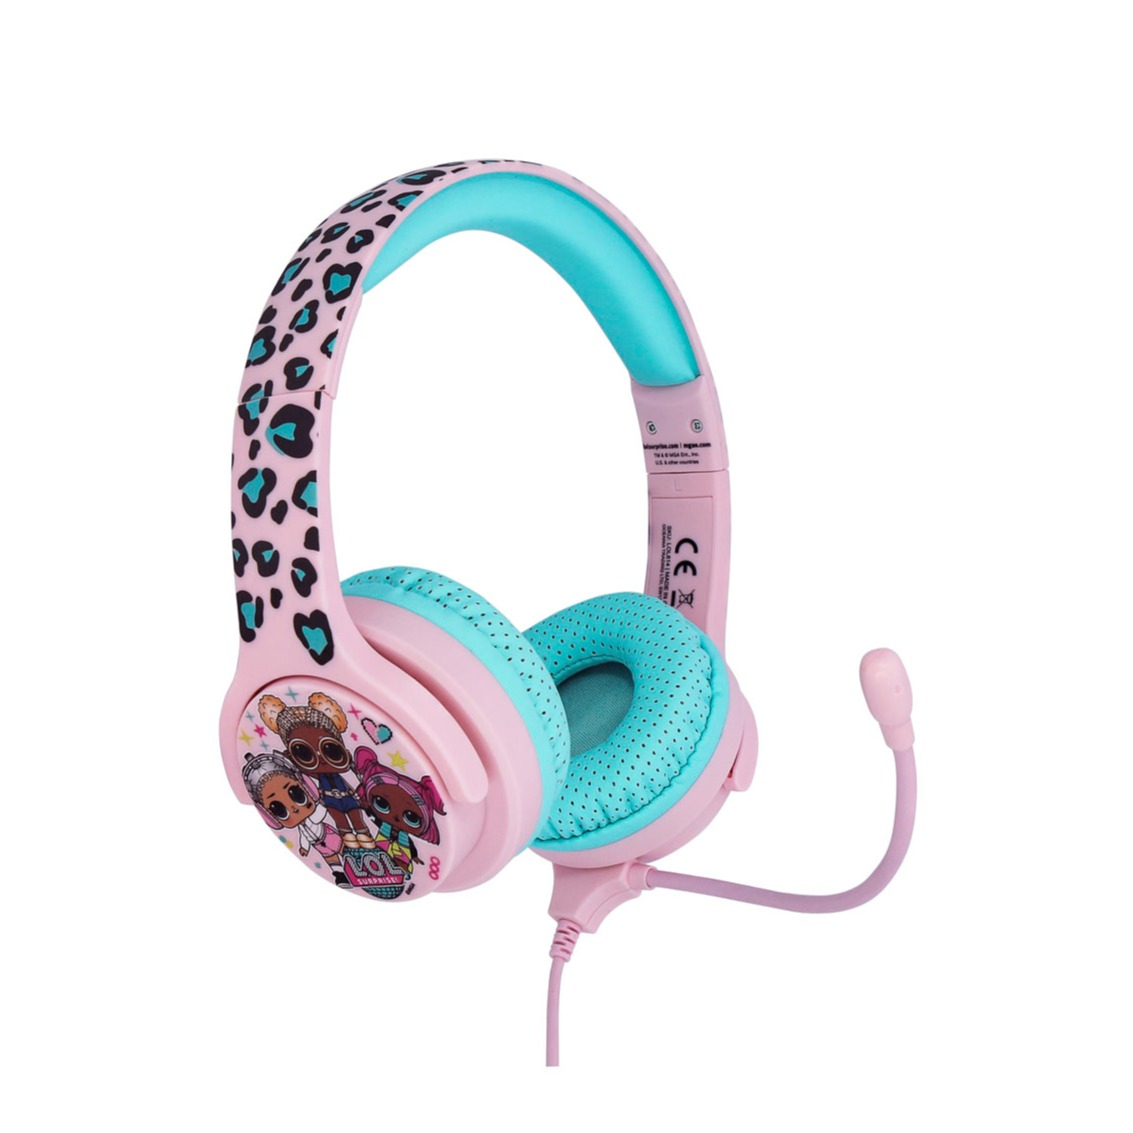 Mice Ear Elesound Kinder Kopfhörer,kabelgebunden,85 db Lautstärkeregler,Kopfhörer für Kinder,Kinder-Kopfhörer,sicher,weich,verstellbar,langlebig,für Kinder,Mädchen,Jungen,Kinder und iPad Schwarz 